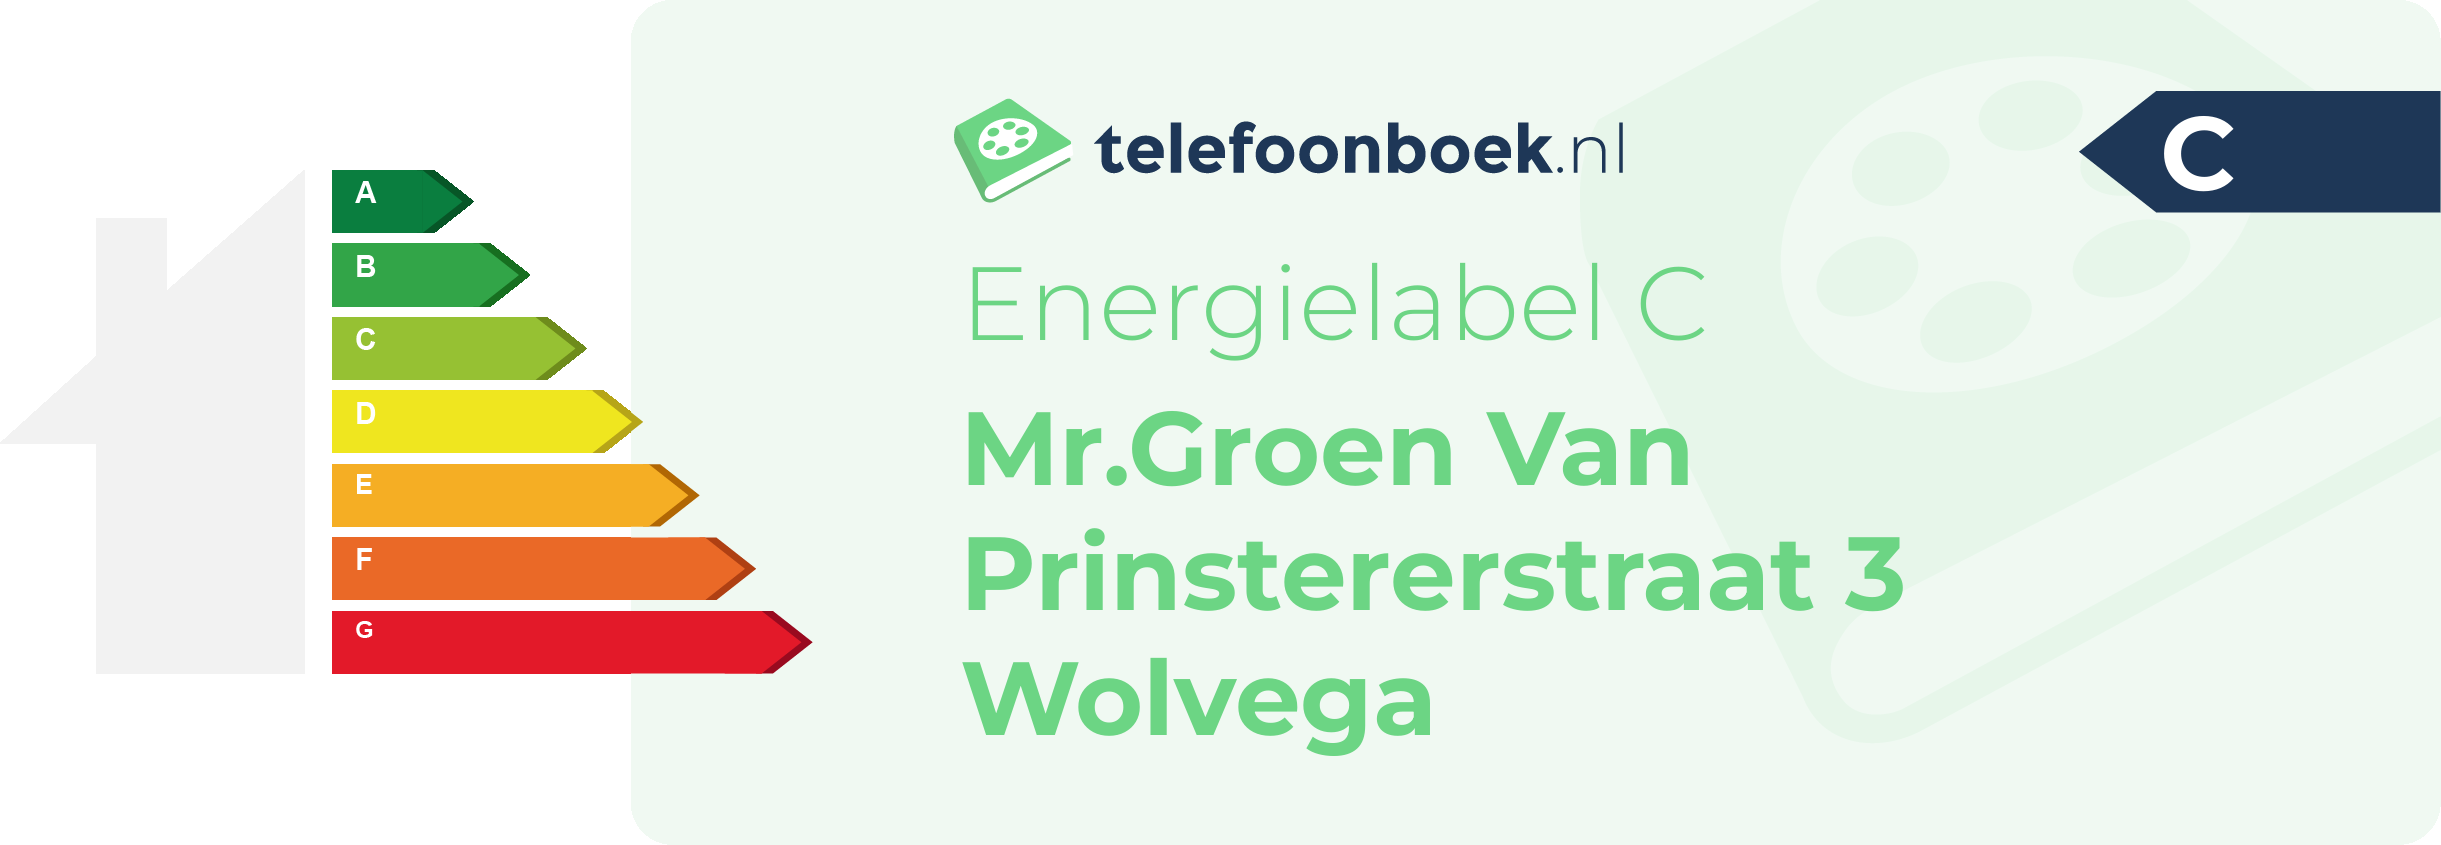 Energielabel Mr.Groen Van Prinstererstraat 3 Wolvega